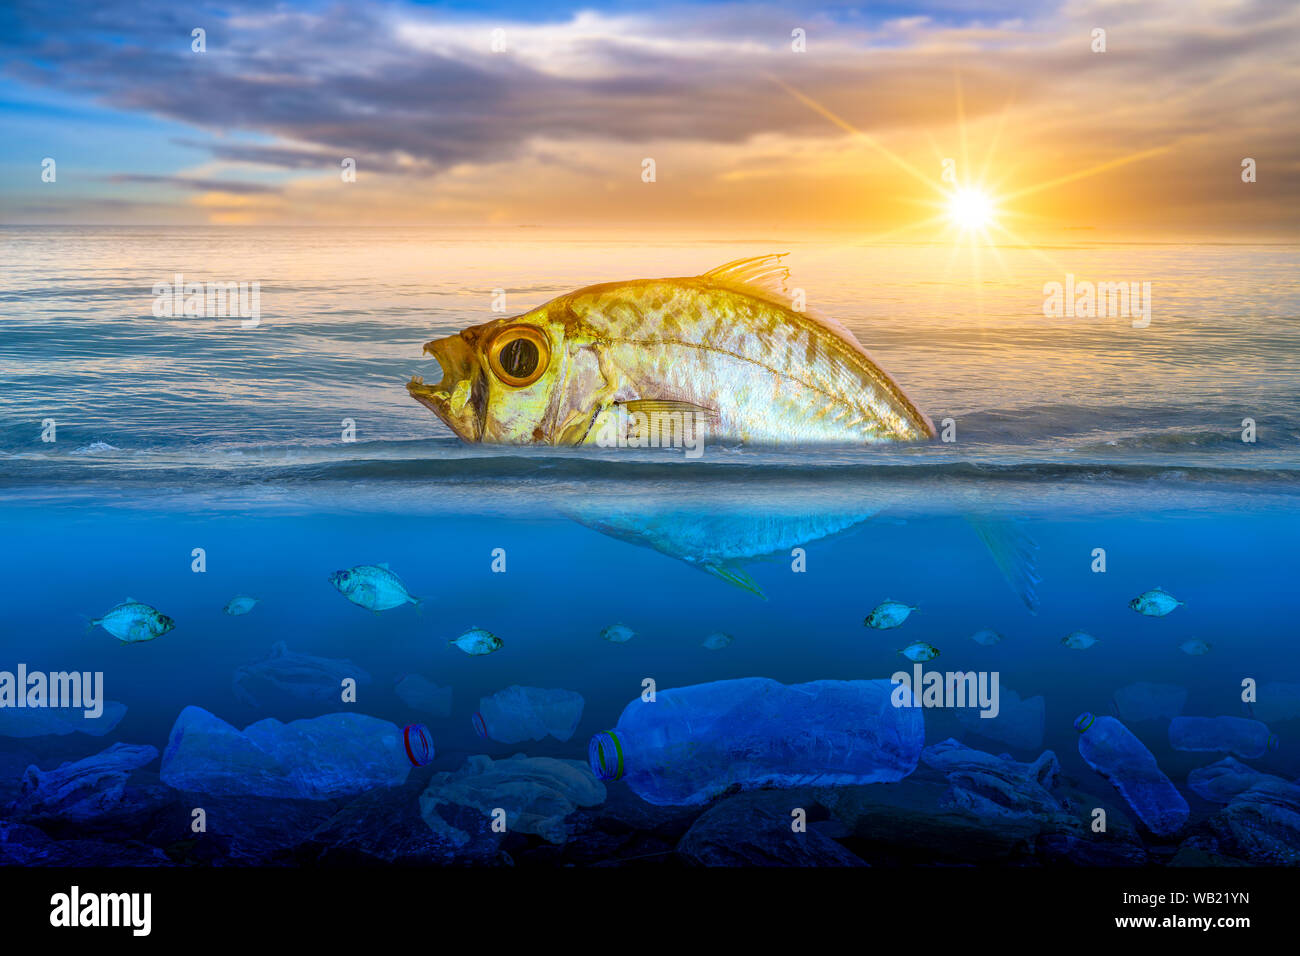 Fische, die sich sterben, schwimmend auf der Oberfläche, die Auswirkungen der Plastikmüll im Meer Konzepte zur Erhaltung der Natur und das Meer Stockfoto